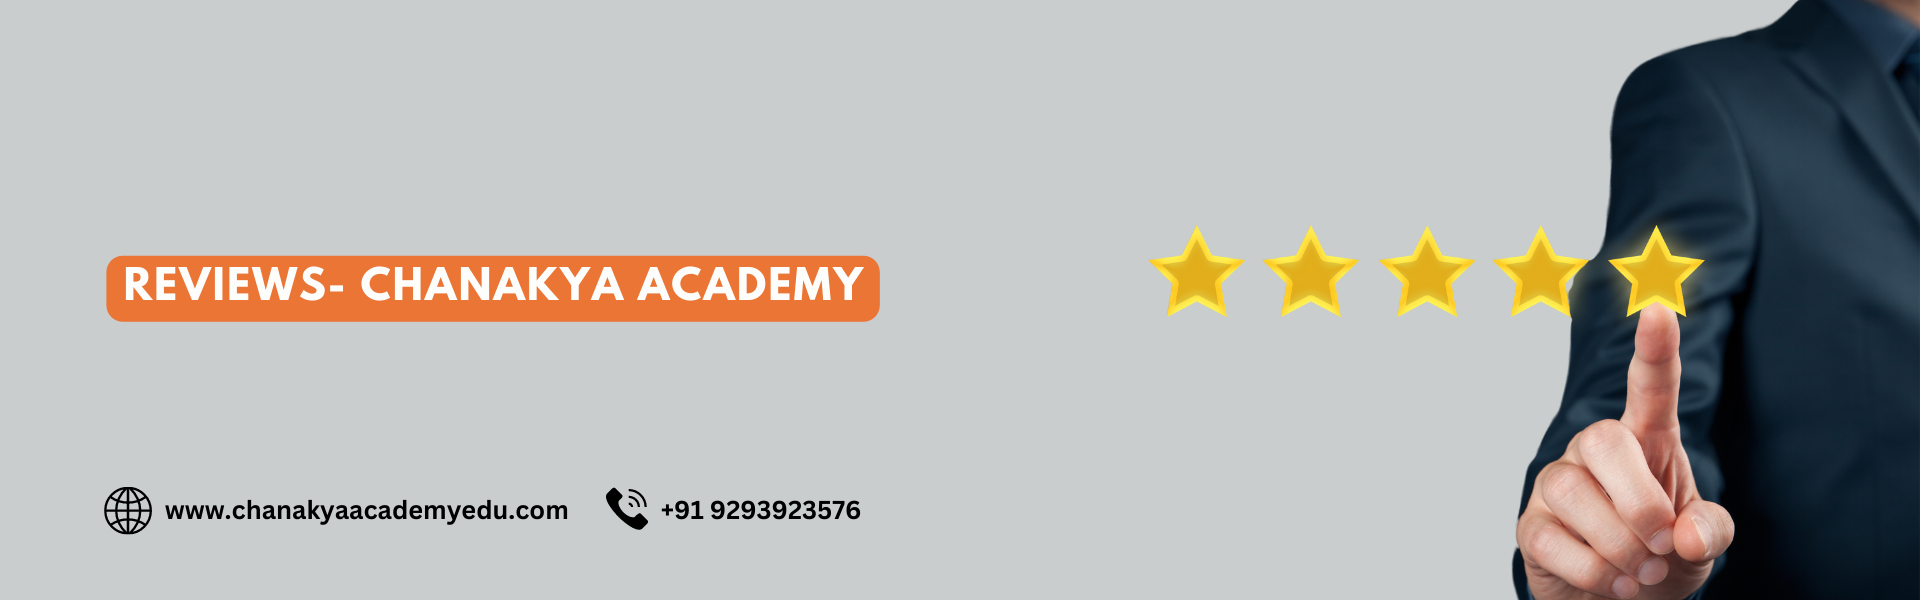 Chanakya Academy Reviews